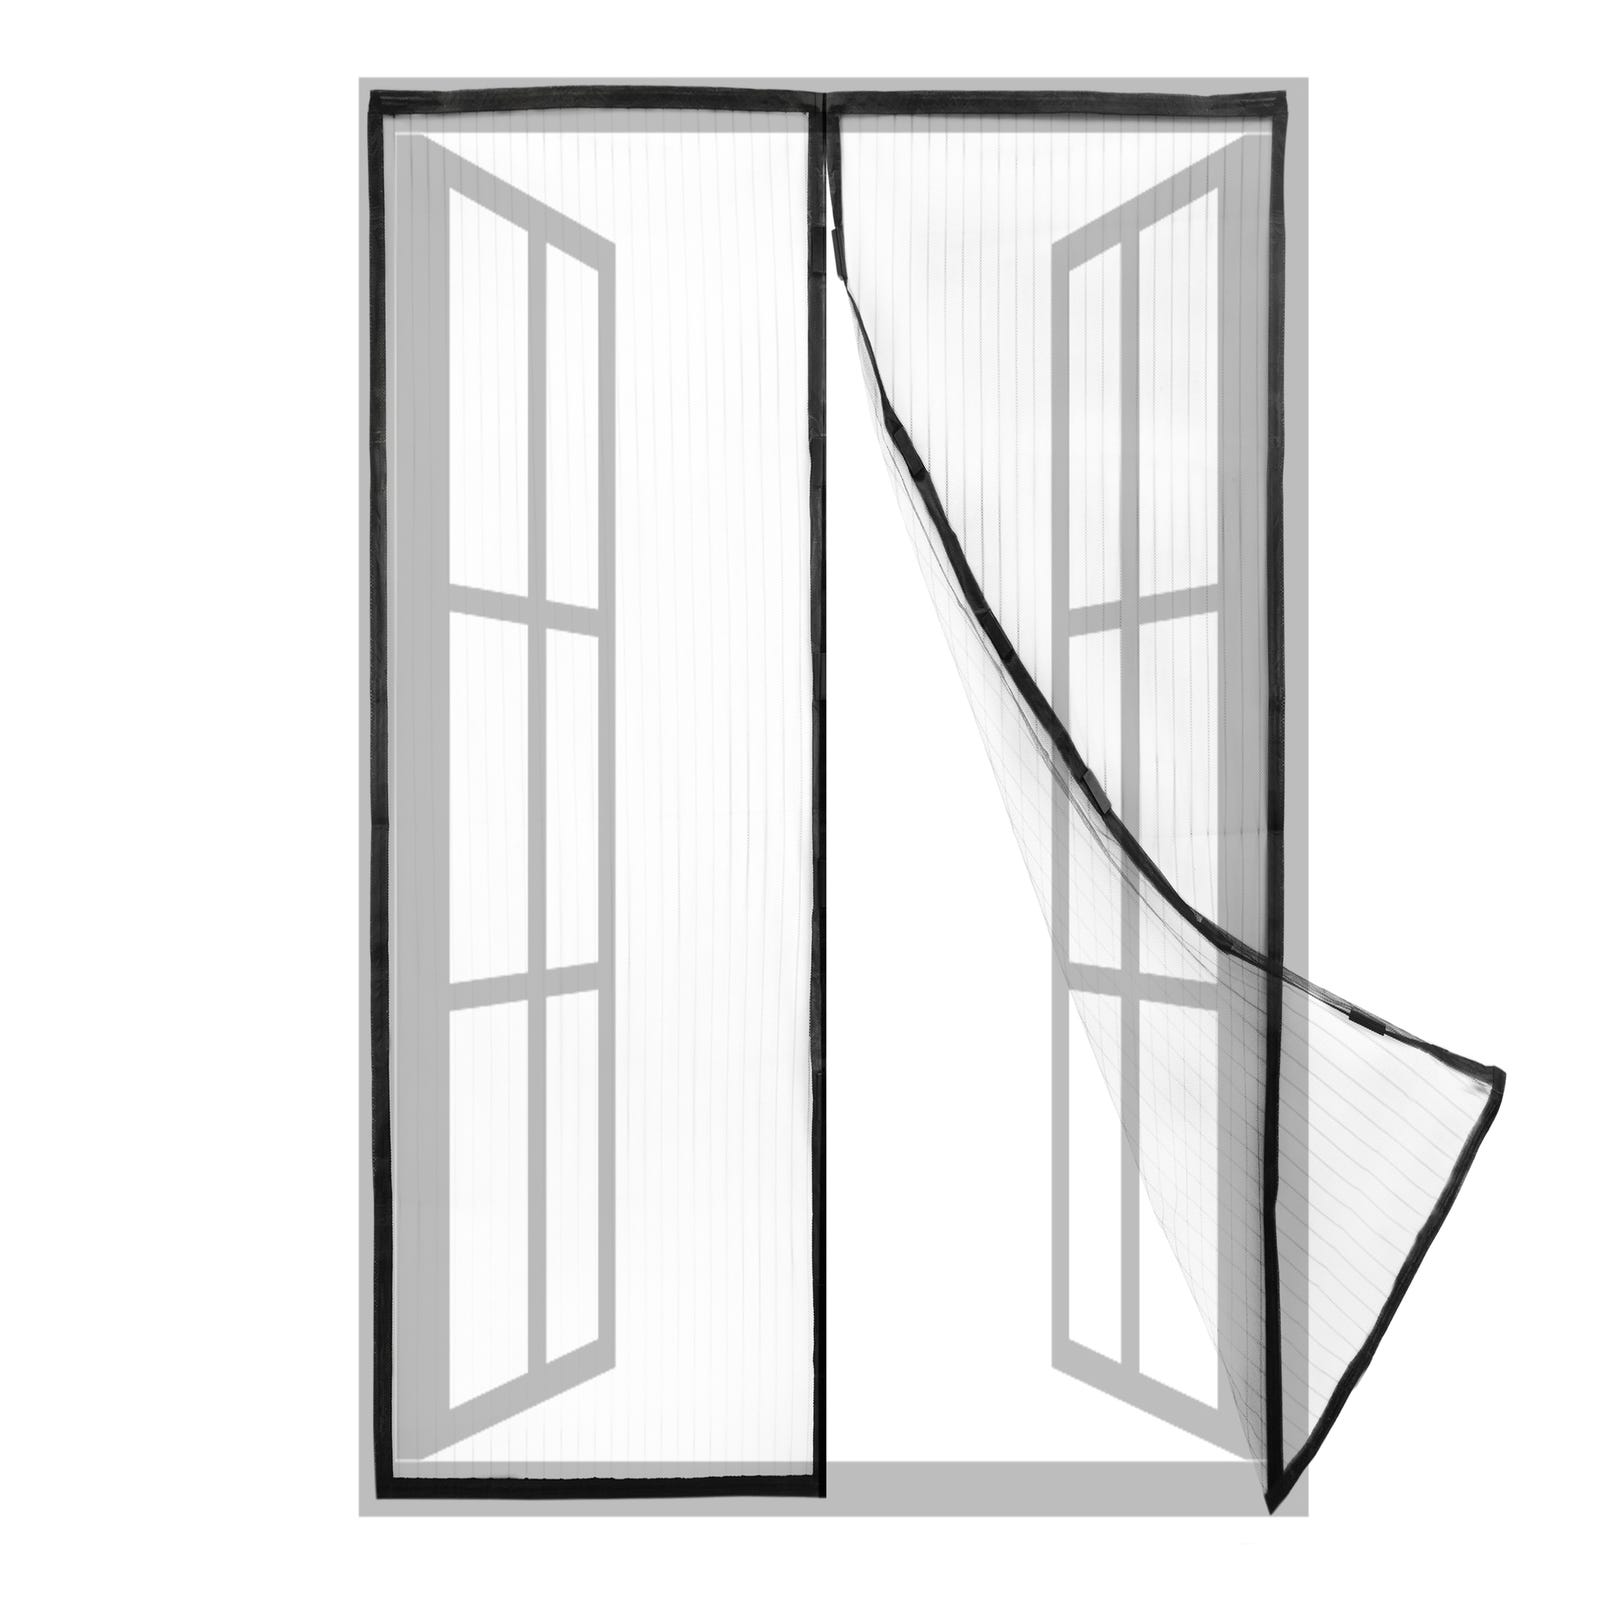 Mosquitera para puerta 74 x 215 cm con cierre magnético